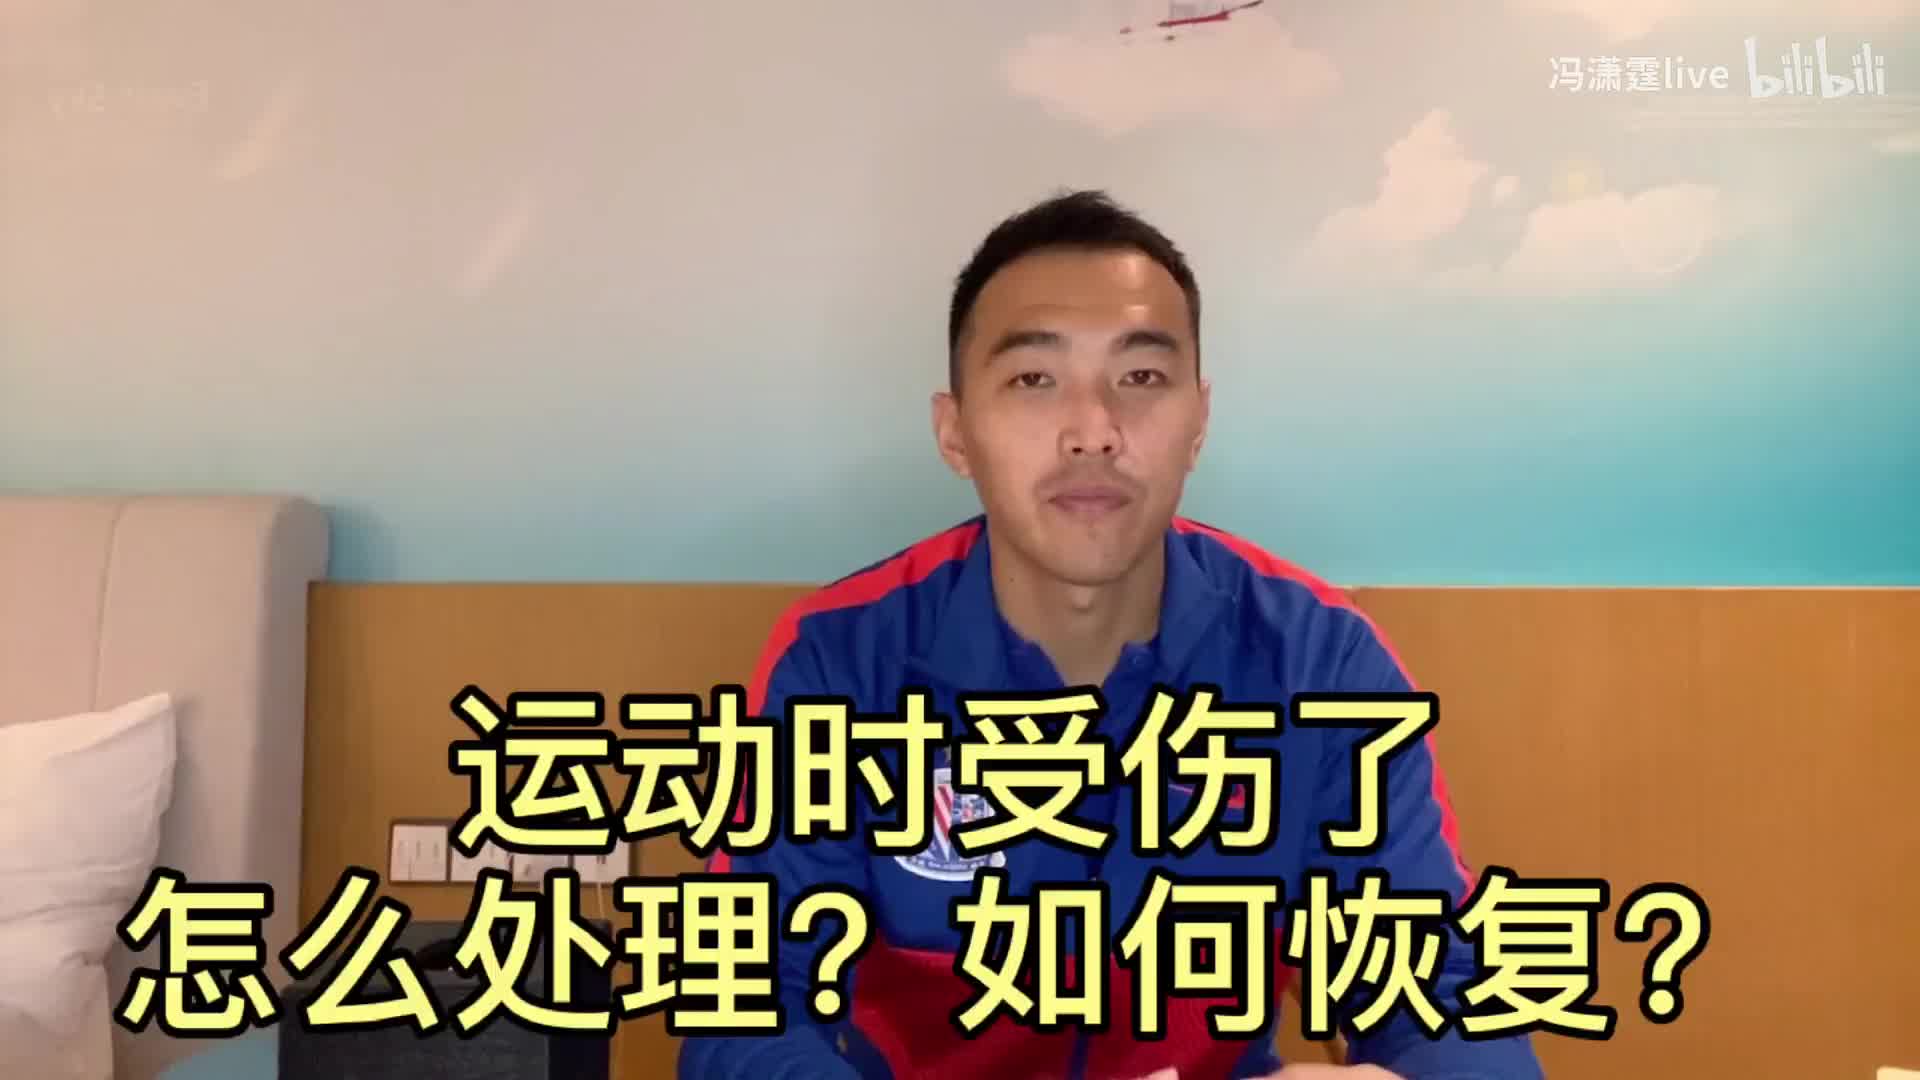 冯潇霆告诉你关于“运动受伤后如何处理和康复”的小建议